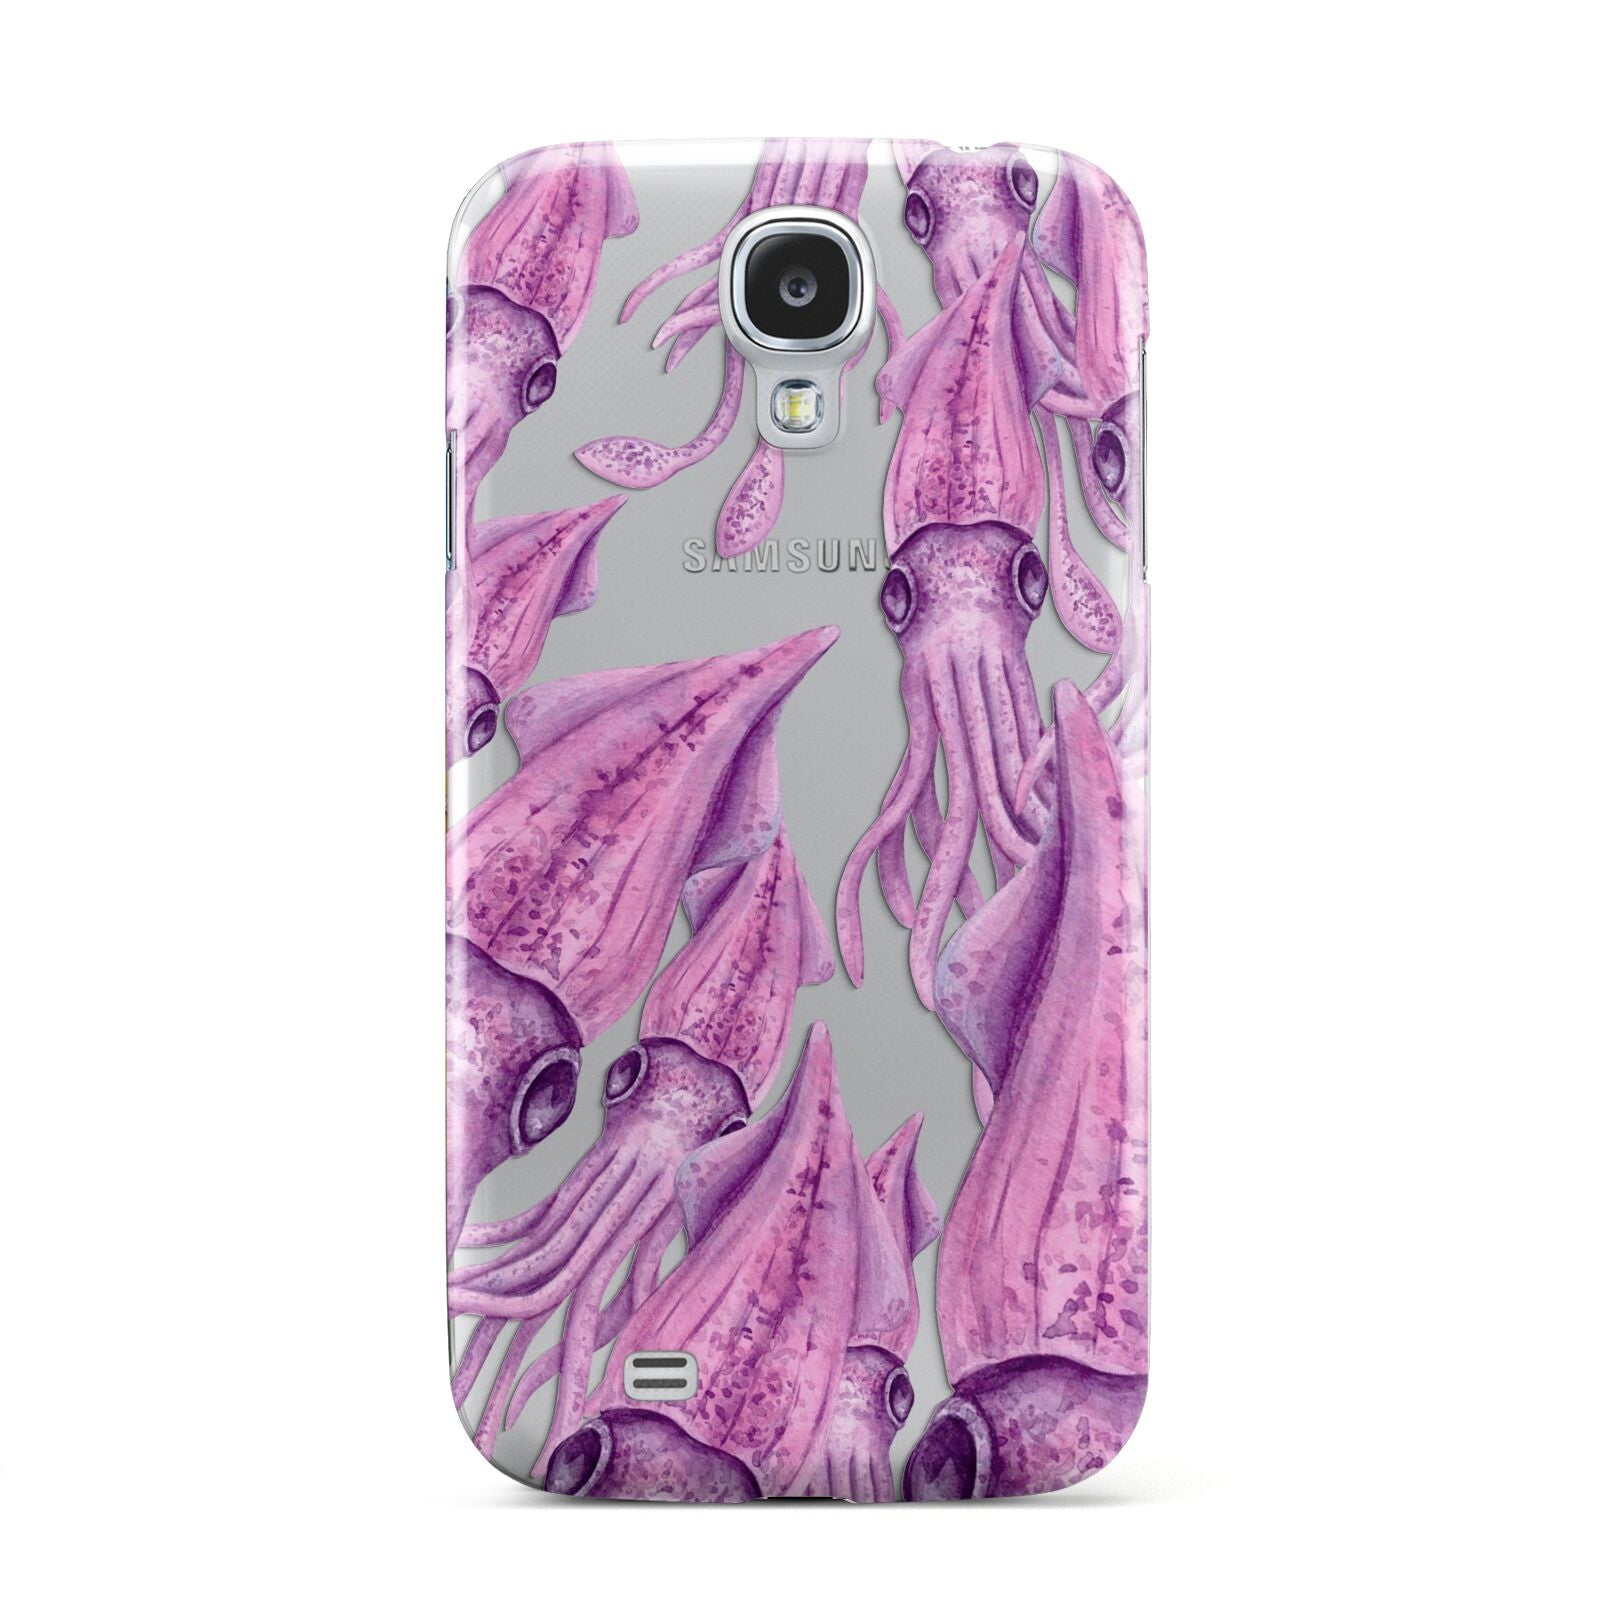 Squid Samsung Galaxy S4 Case